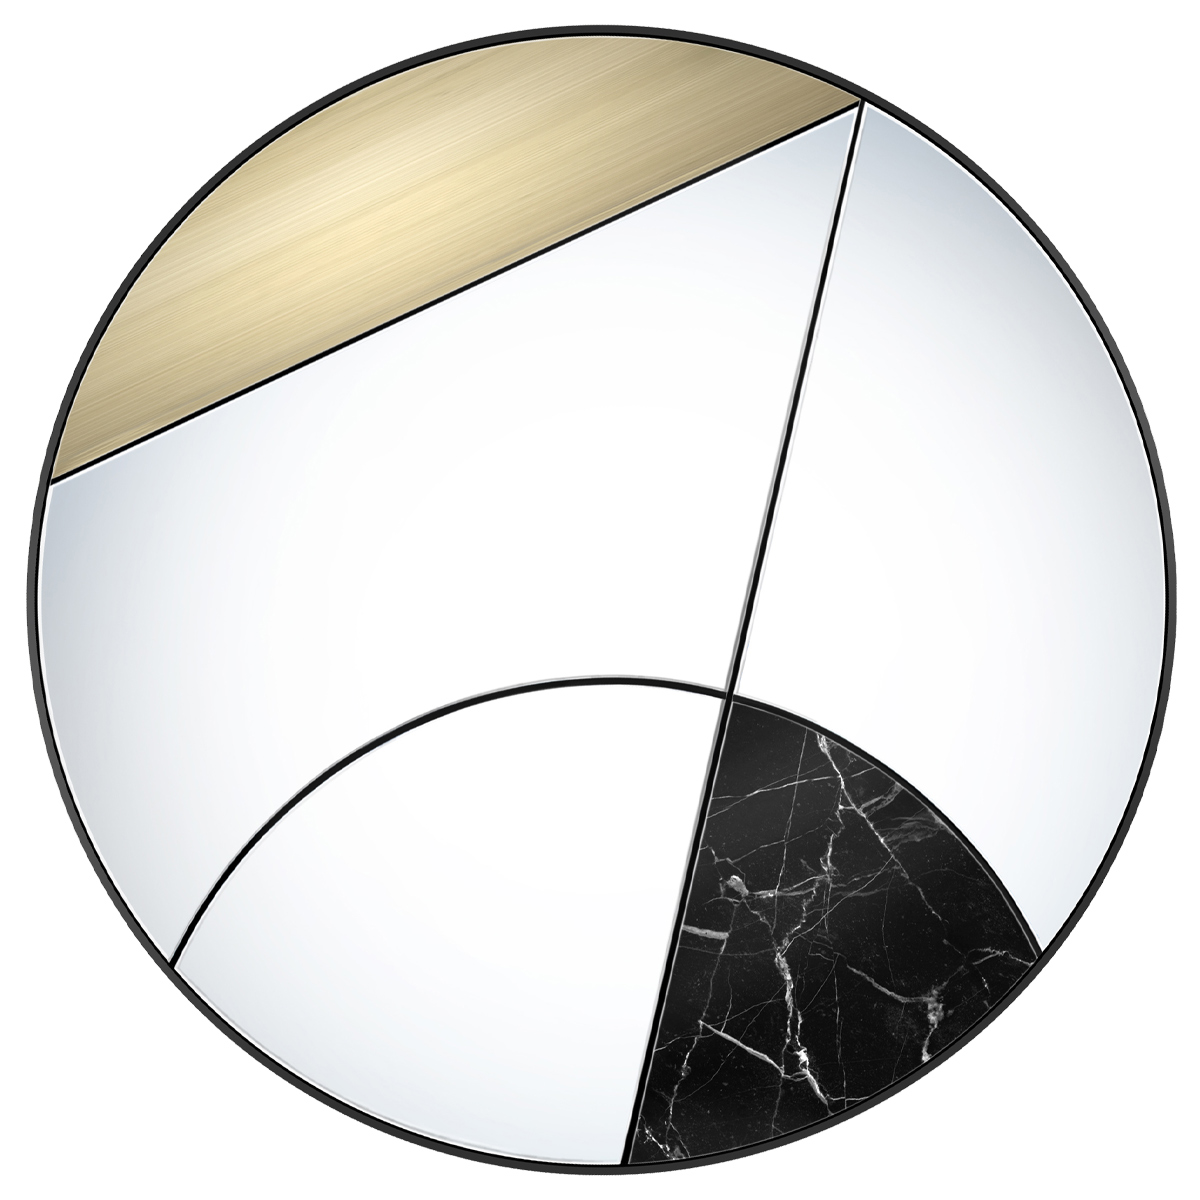 Specchio da parete Eclipsis II by Atlasproject